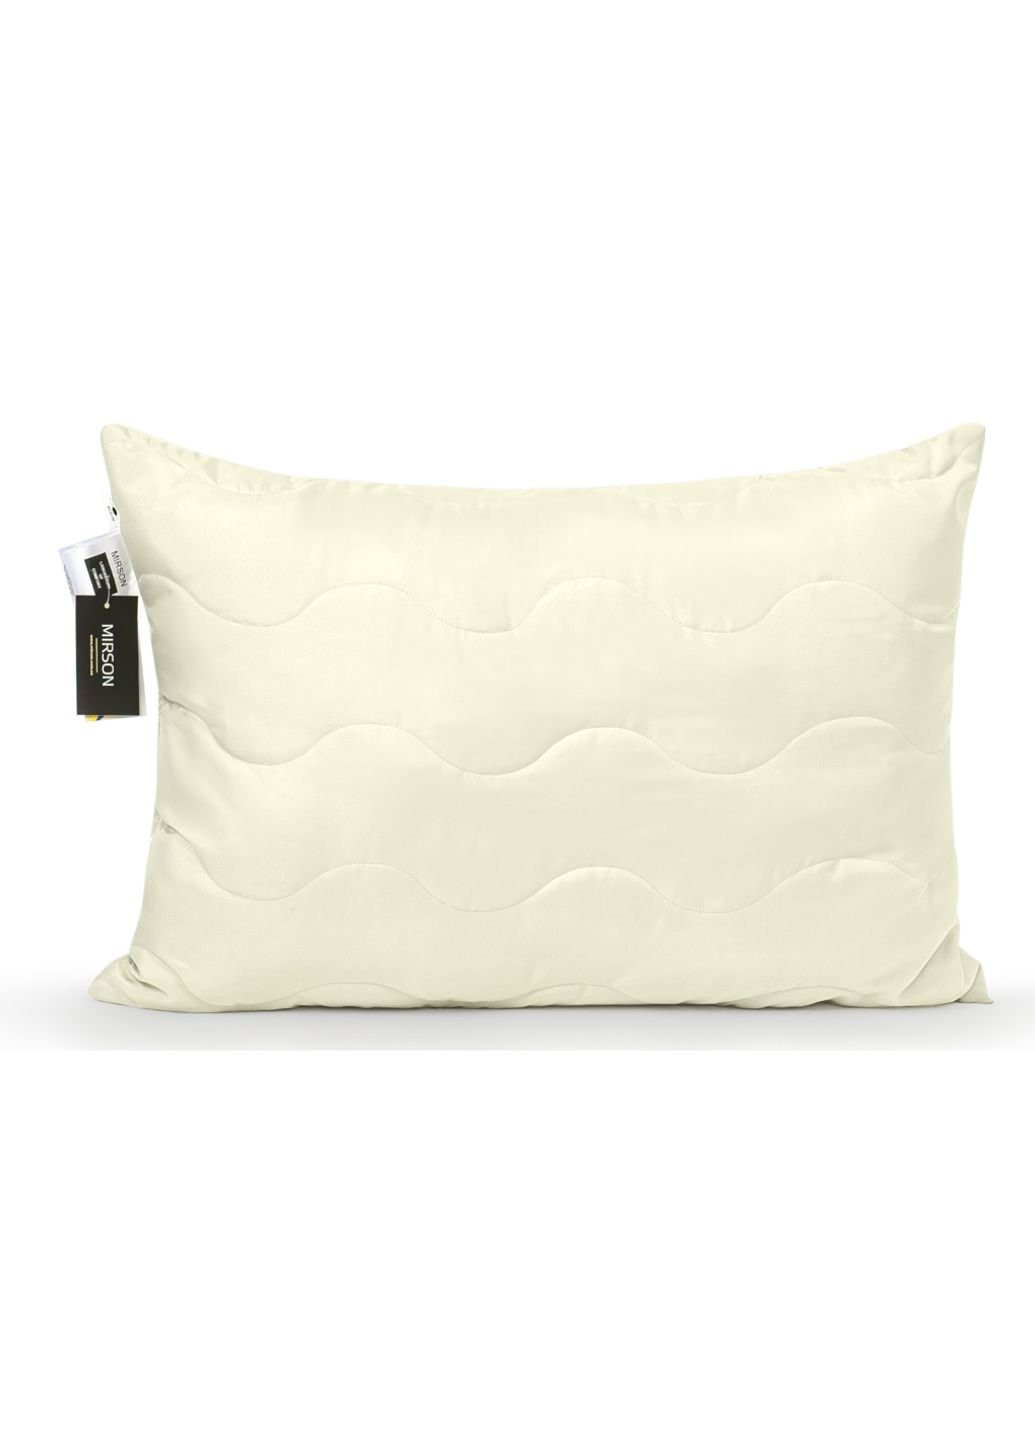 Одеяло MirSon Набор Eco-Soft всесезонный 1695 EcoLightPink Одеяло + подушк (2200002655408) No Brand (254009949)